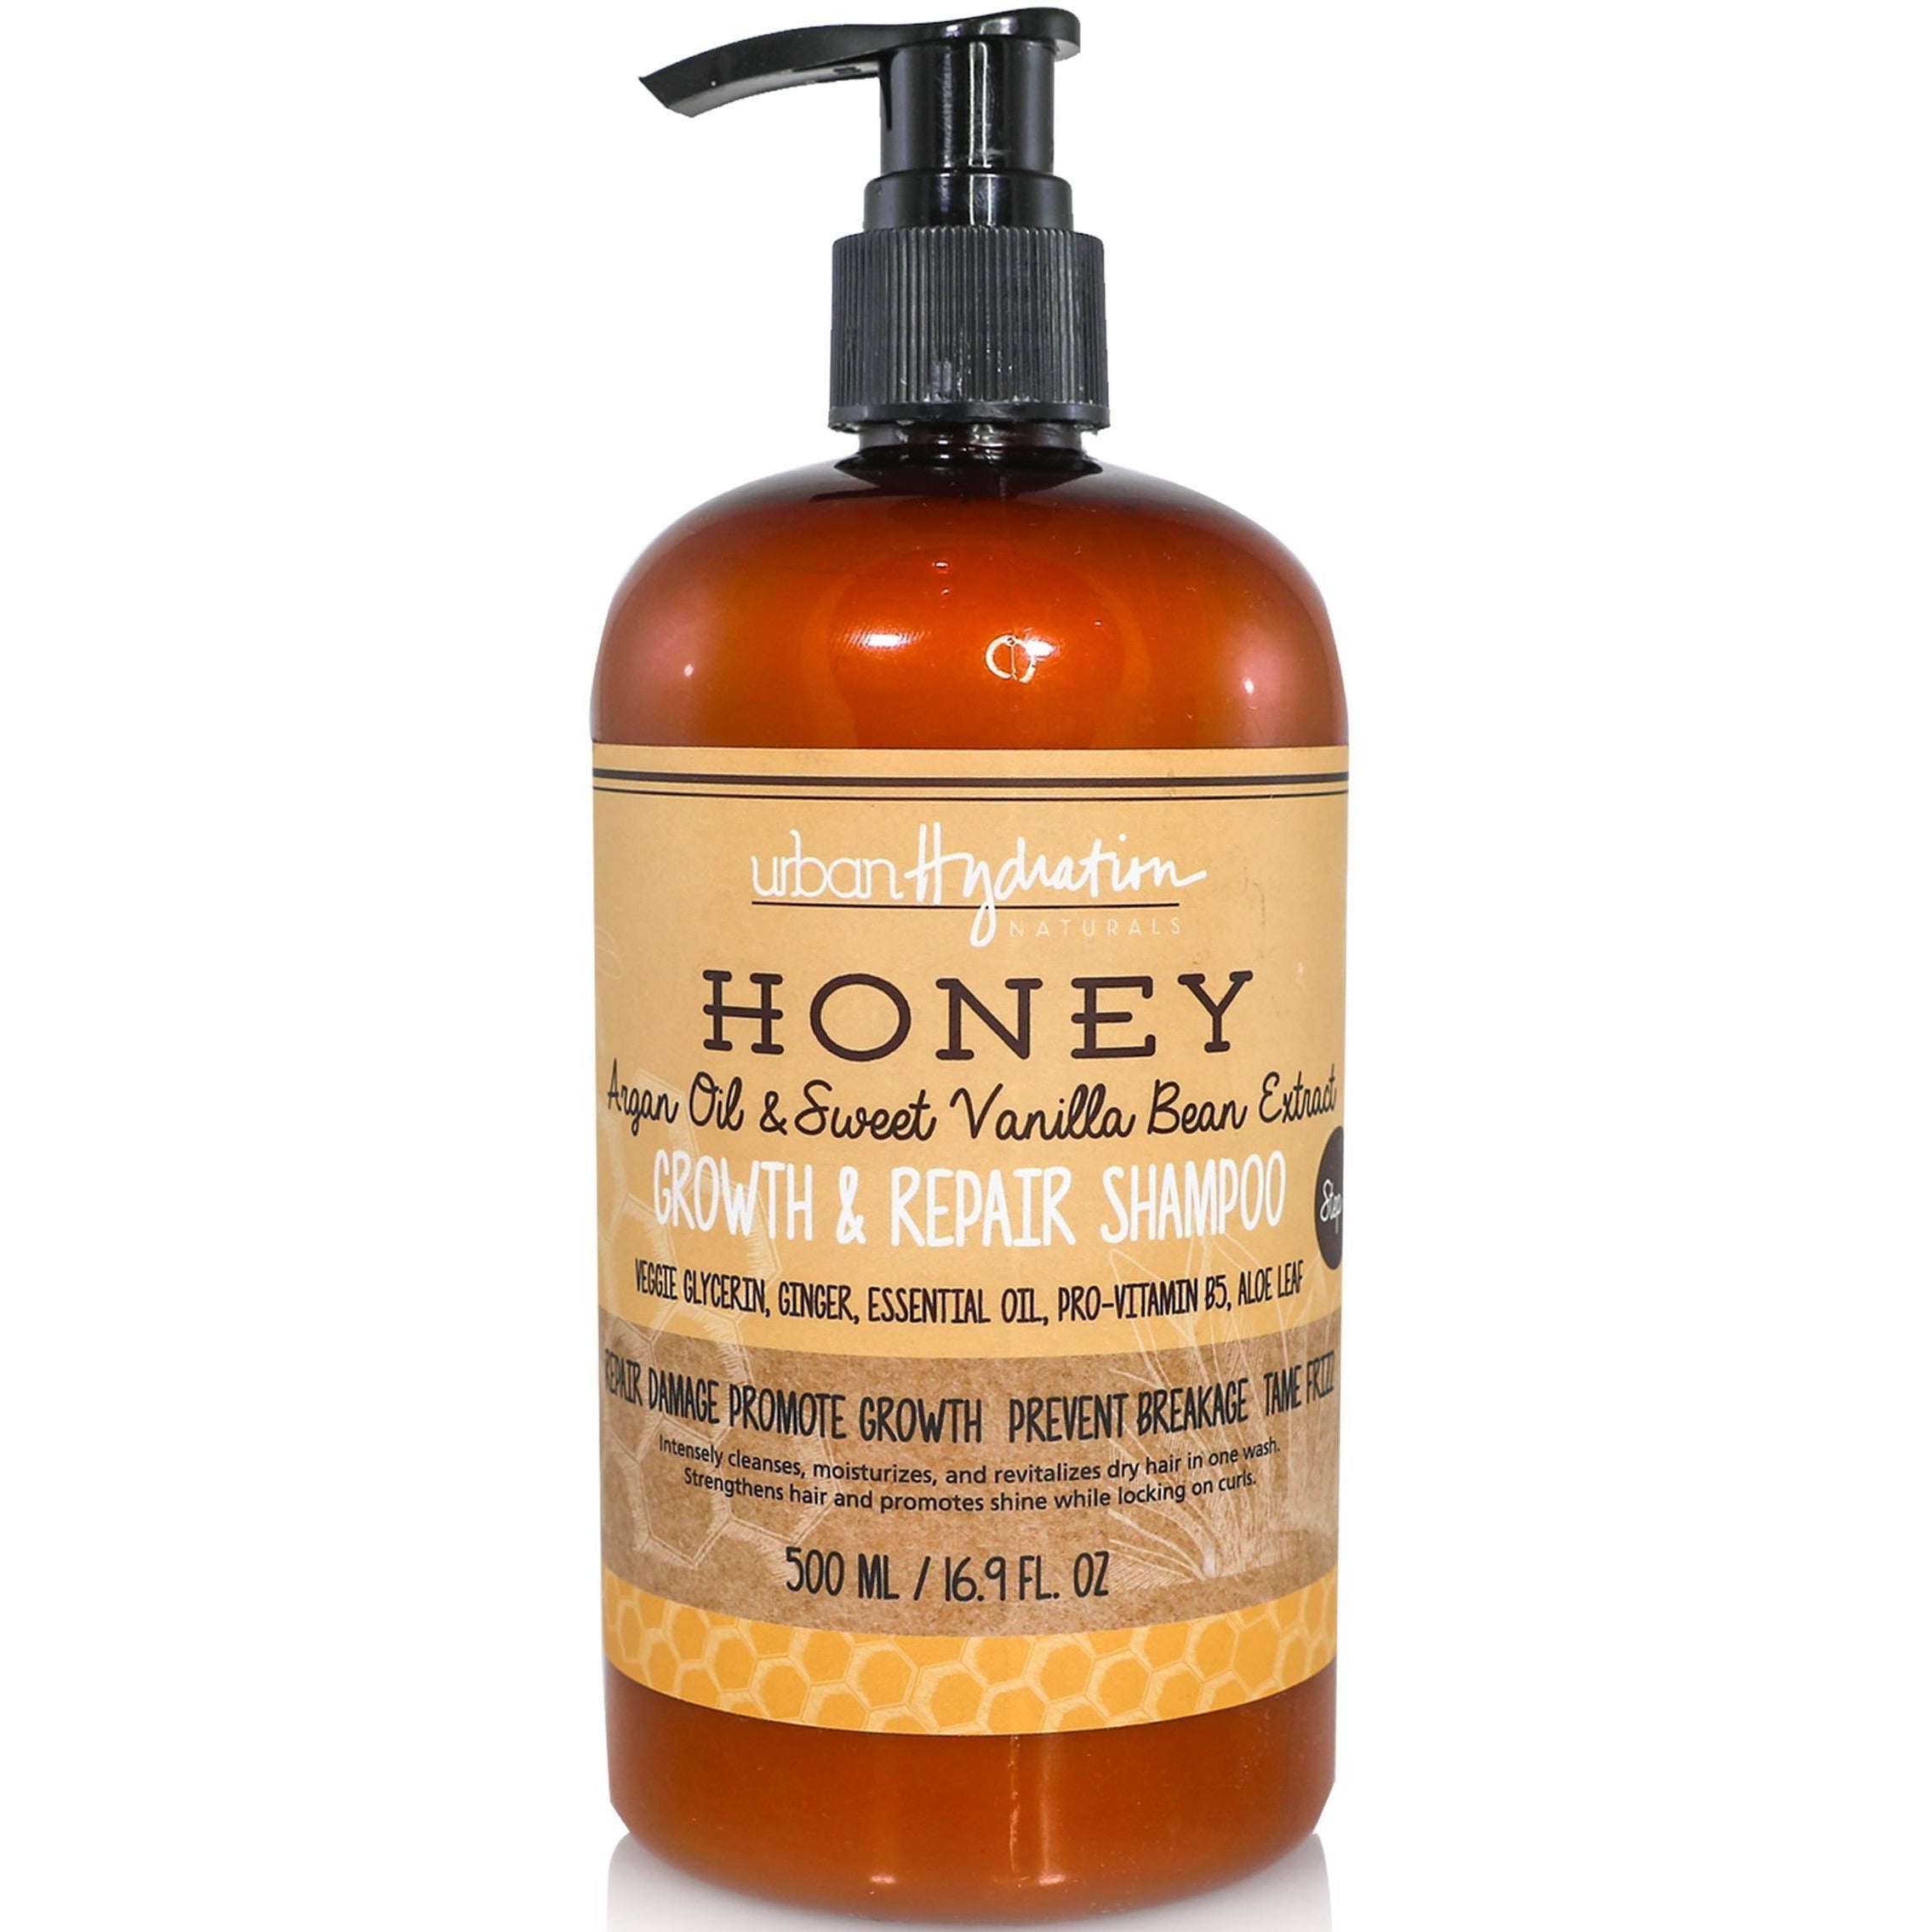 4th Ave Market: Urban Hydration Honey growth & repair shampoo, 16.9 fluid ounce